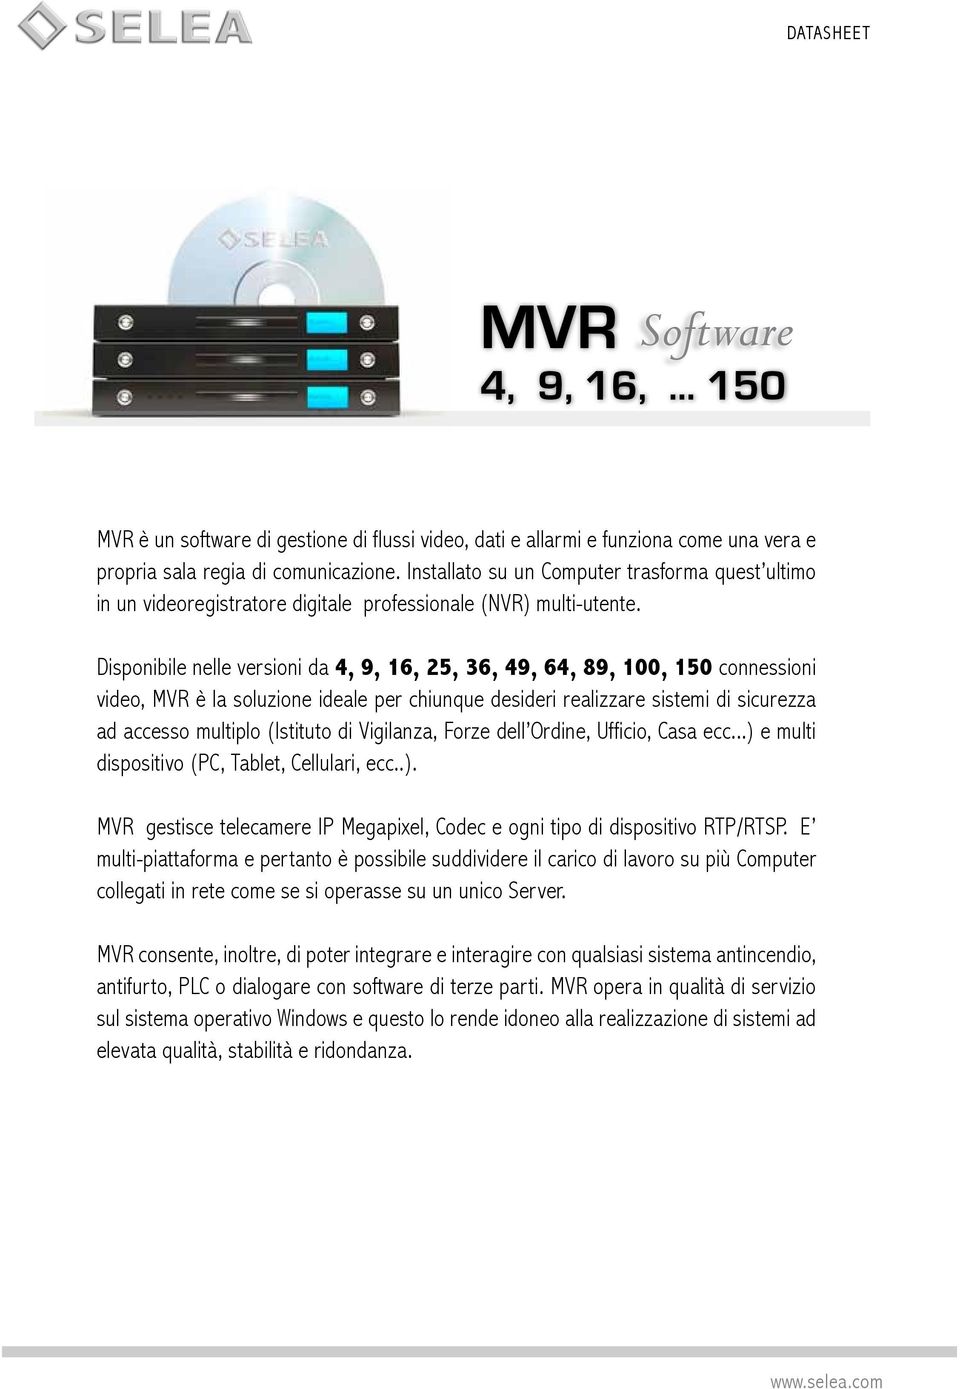 Disponibile nelle versioni da 4, 9, 16, 25, 36, 49, 64, 89, 100, 150 connessioni video, MVR è la soluzione ideale per chiunque desideri realizzare sistemi di sicurezza ad accesso multiplo (Istituto